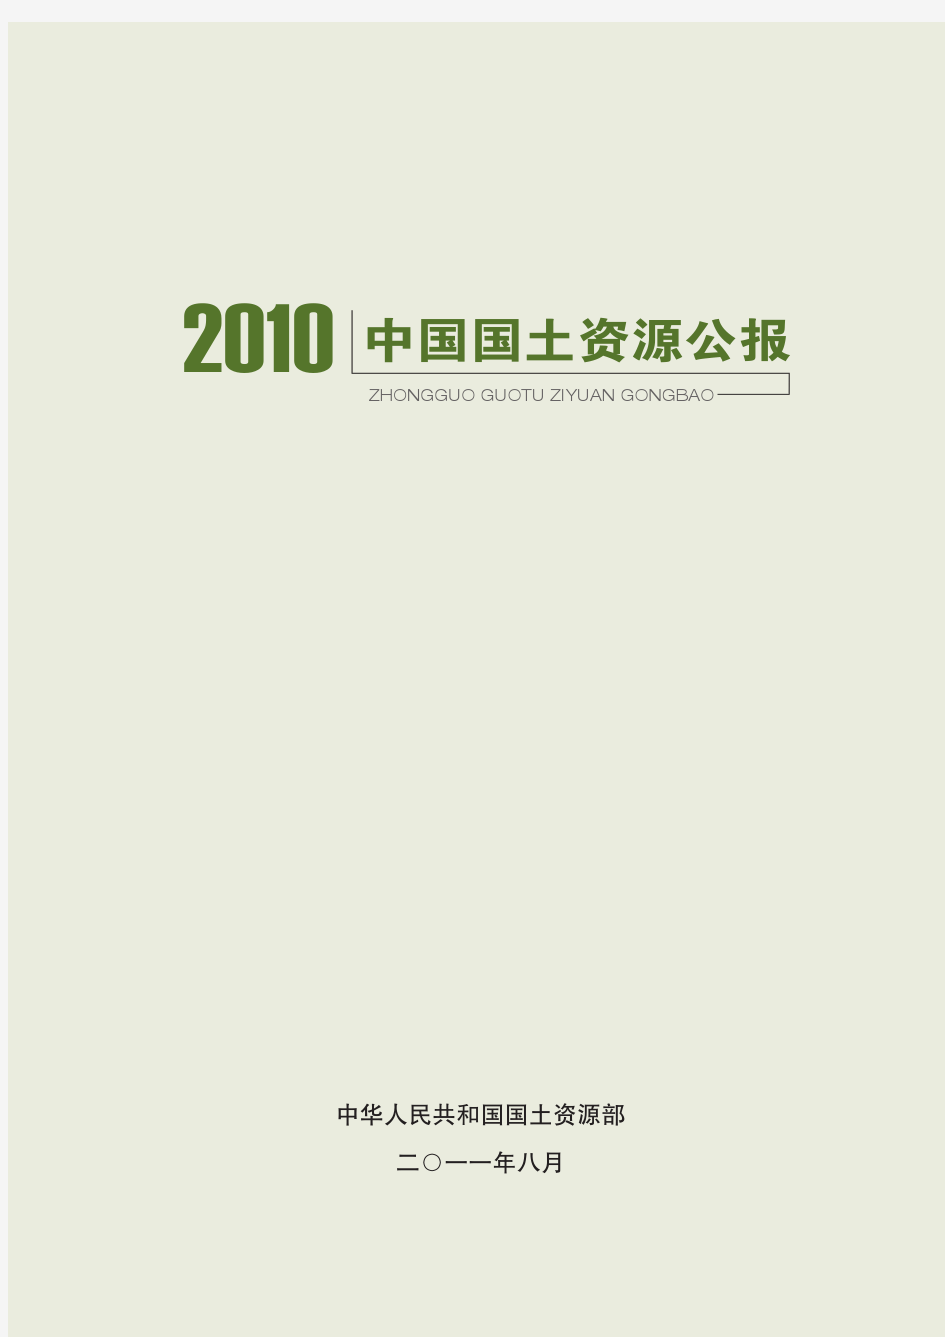 2010中国国土资源公报